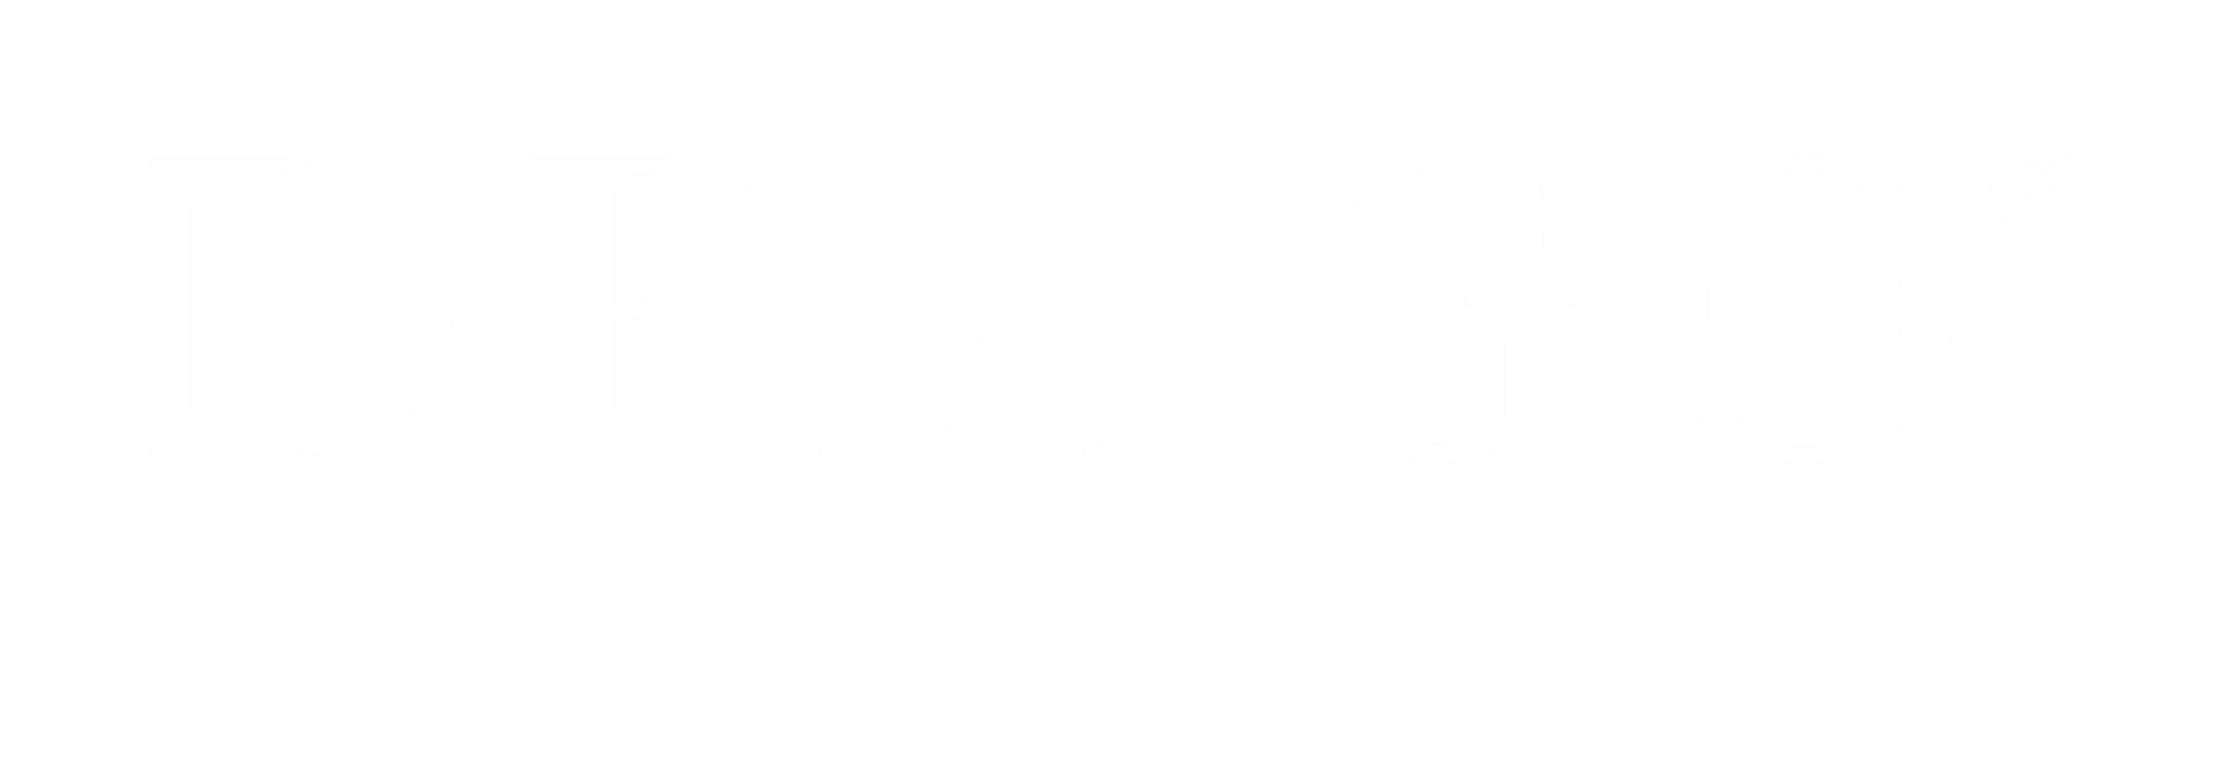 Drago